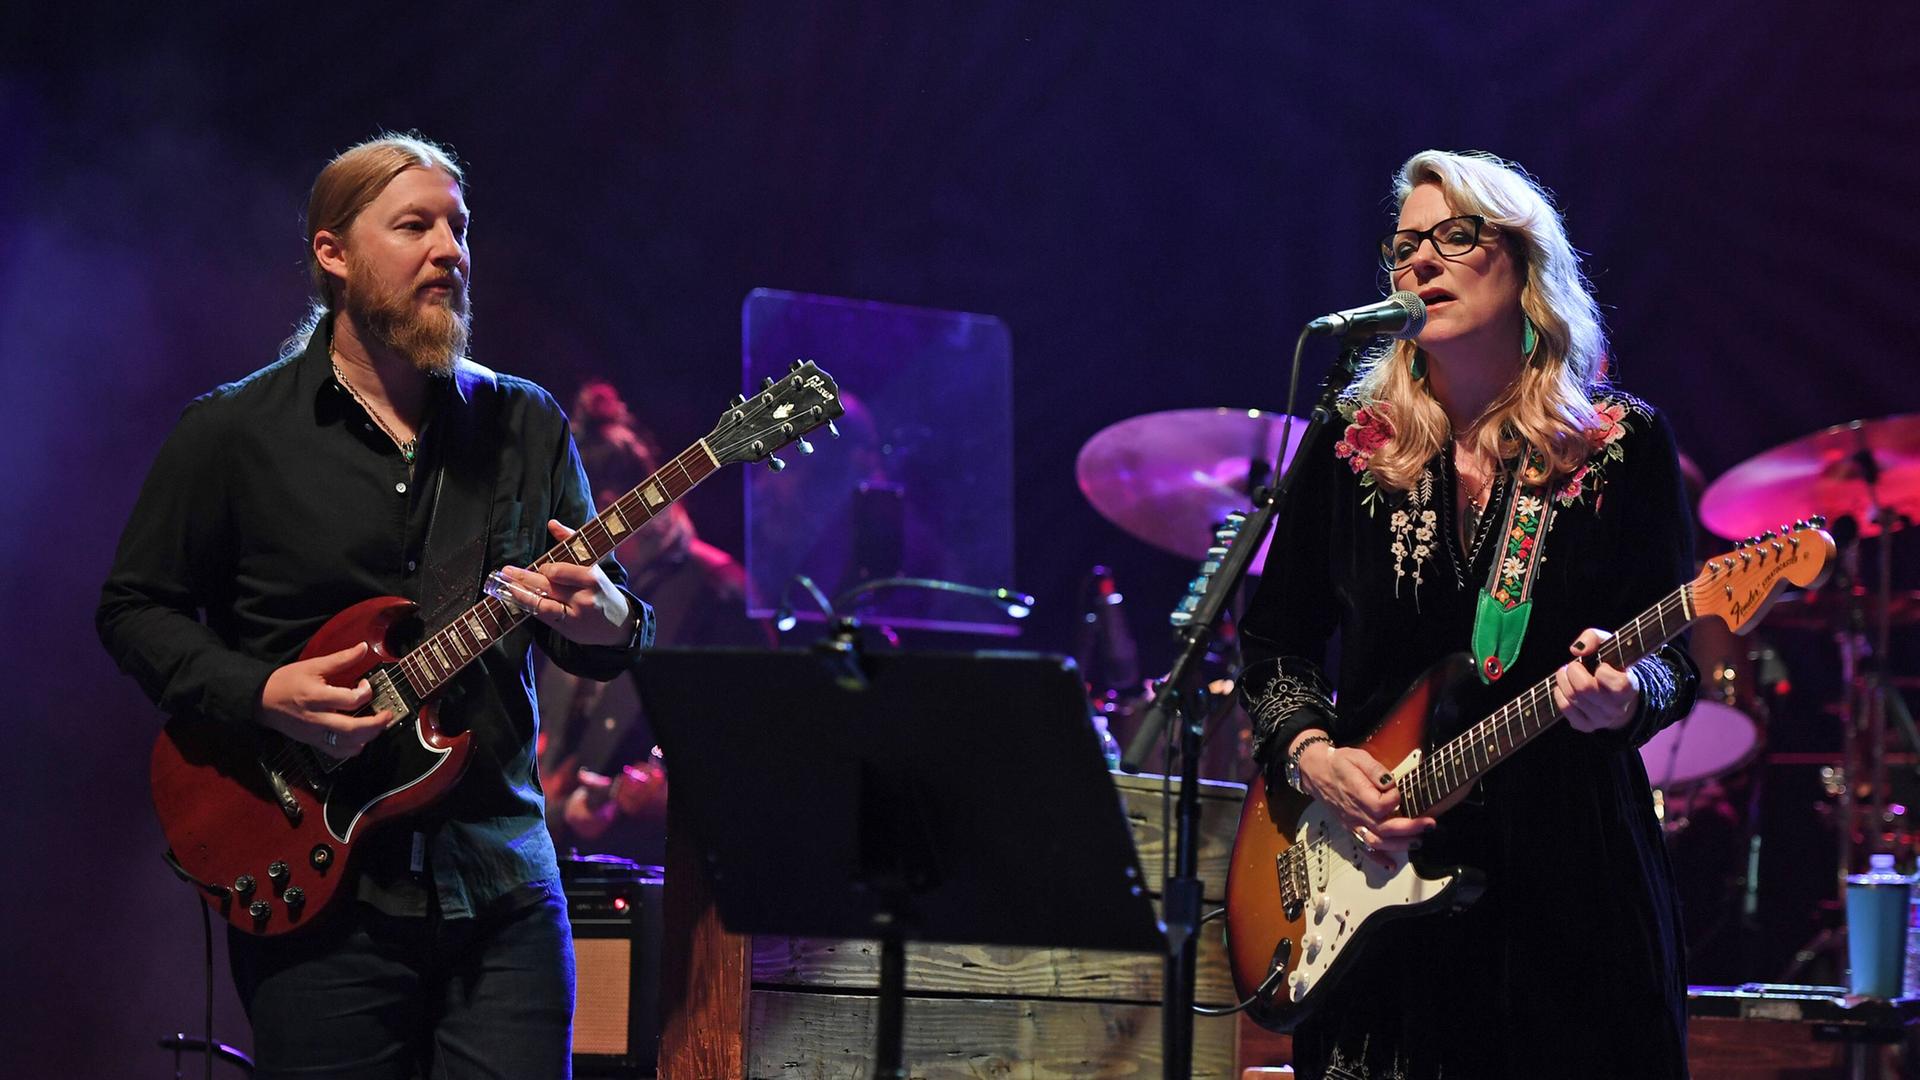 Derek Trucks and Susan Tedeschi stehen performend auf einer Bühne, während beide Gitarre spielen und sie zusätzlich singt.